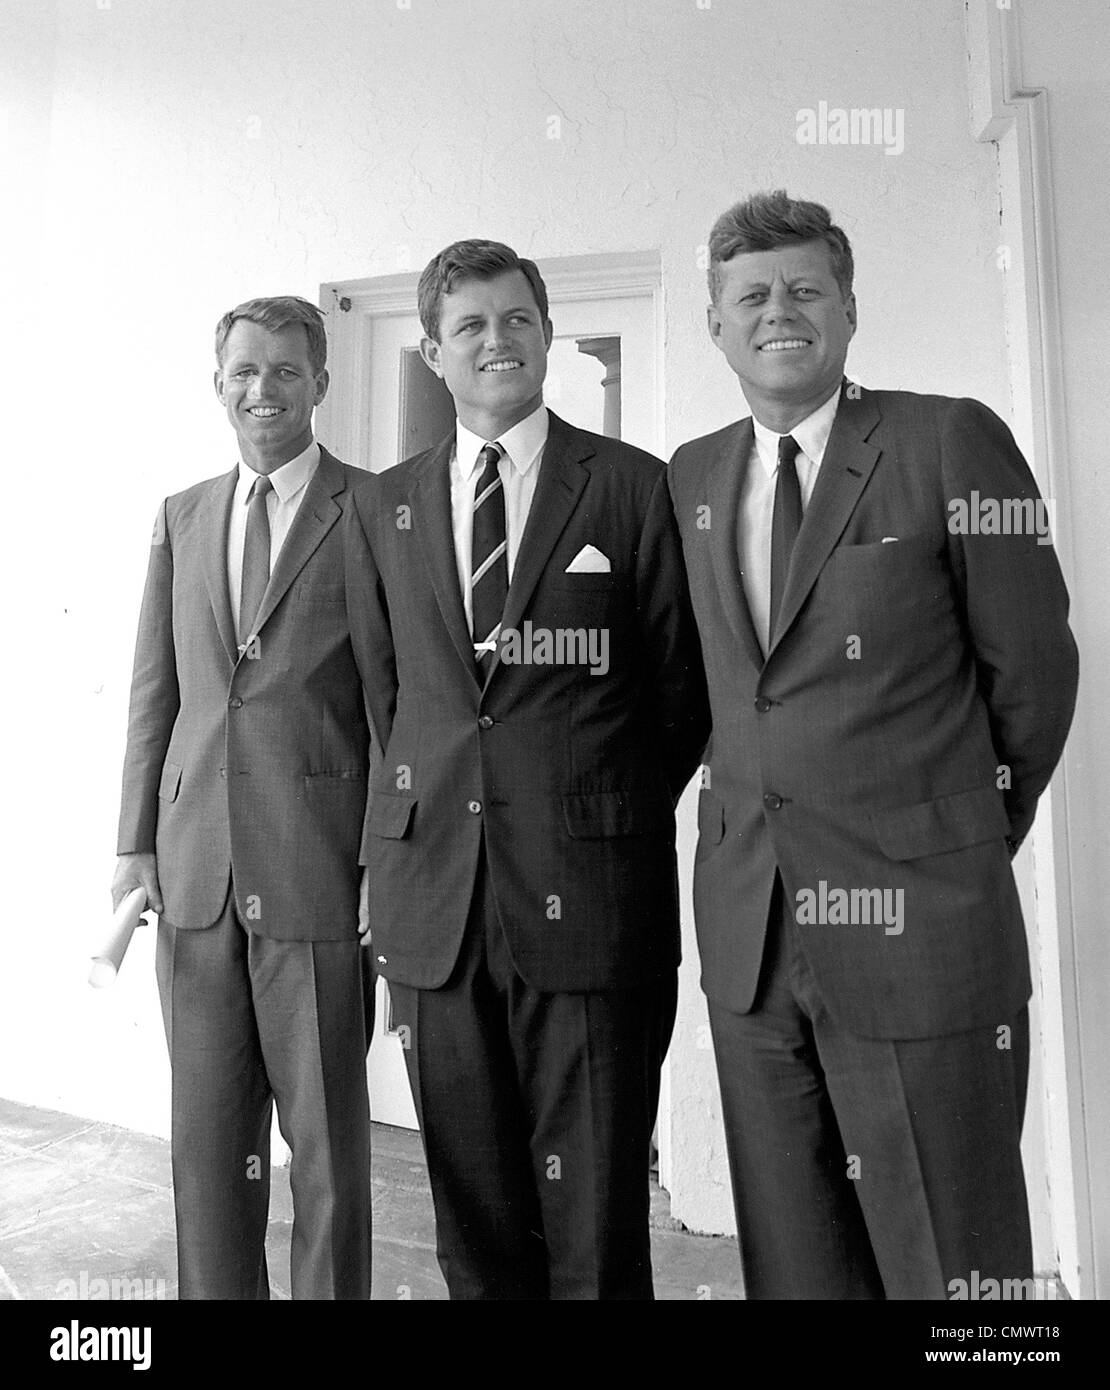 Präsident JOHN f. KENNEDY auf der rechten Seite mit den Brüdern Robert (links) und Edward außerhalb des weißen Hauses Oval Office am 28. August 1963 Stockfoto